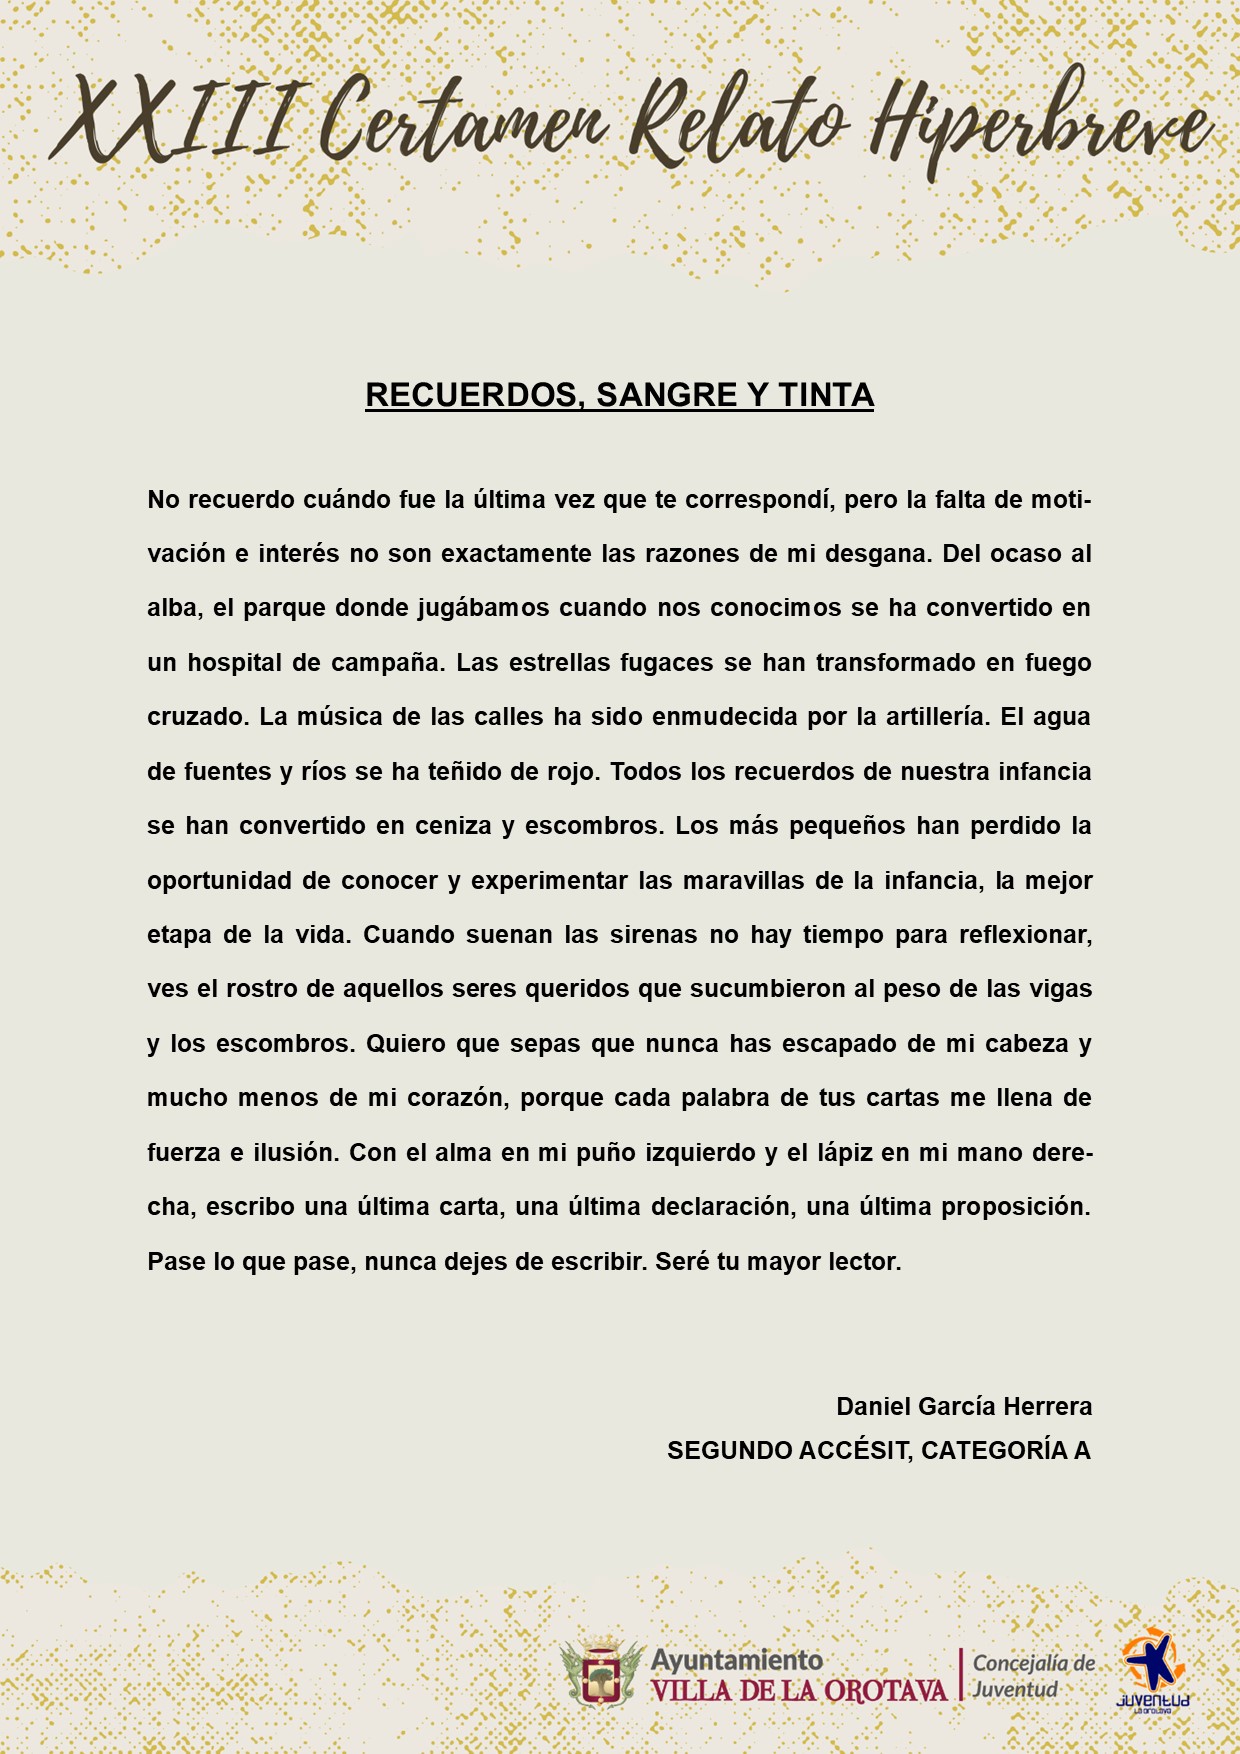 (4) Segundo accésit Categoría A - Daniel García Herrera (Recuerdos, sangre y tinta)